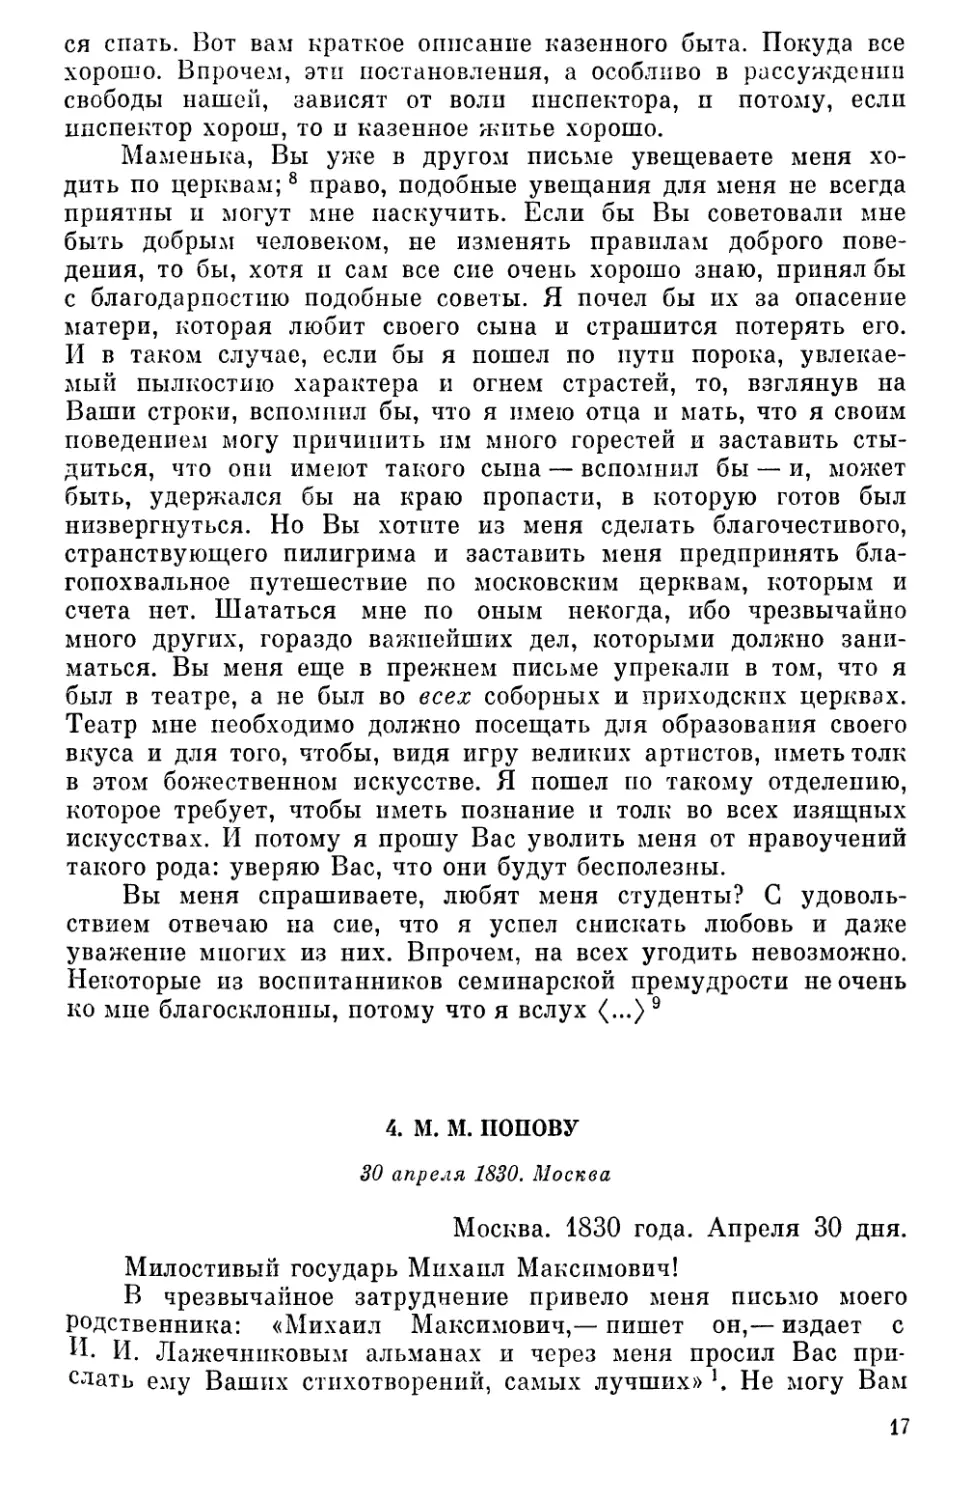 4. М. М. Попову. 30 апреля 1830